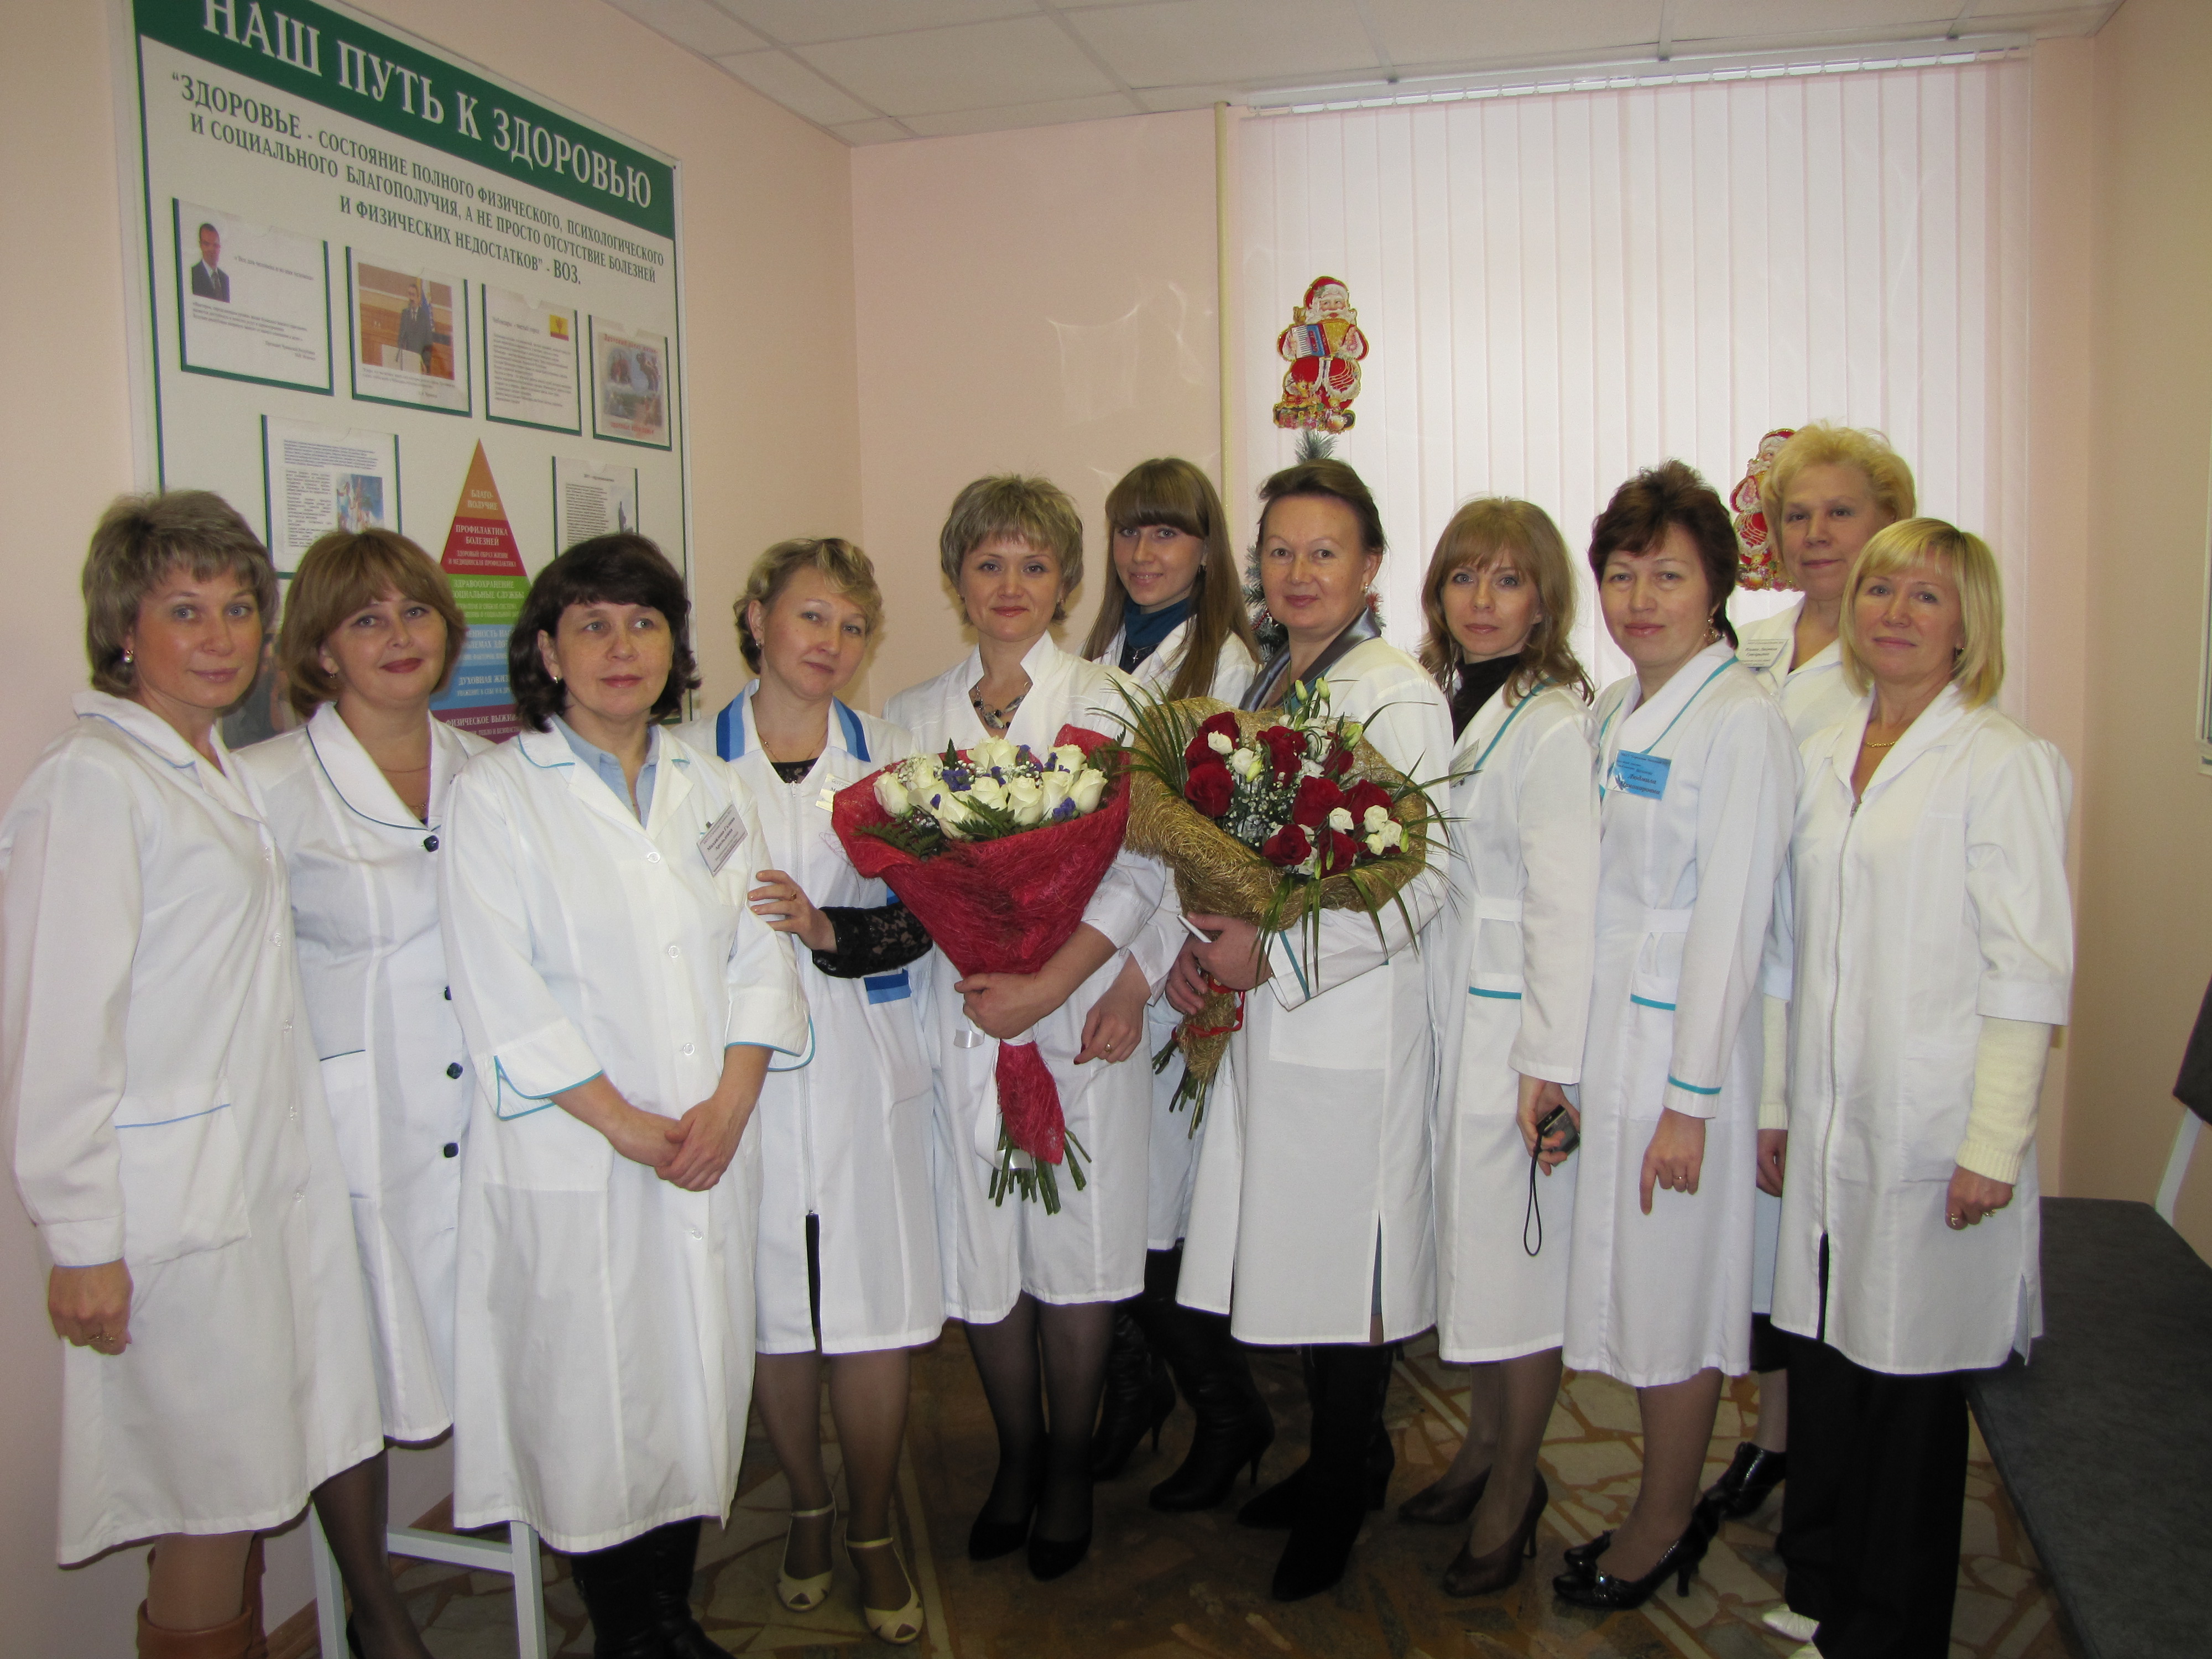 08:56 В Московском районе г. Чебоксары состоялось открытие нового офиса врачебной (семейной) практики